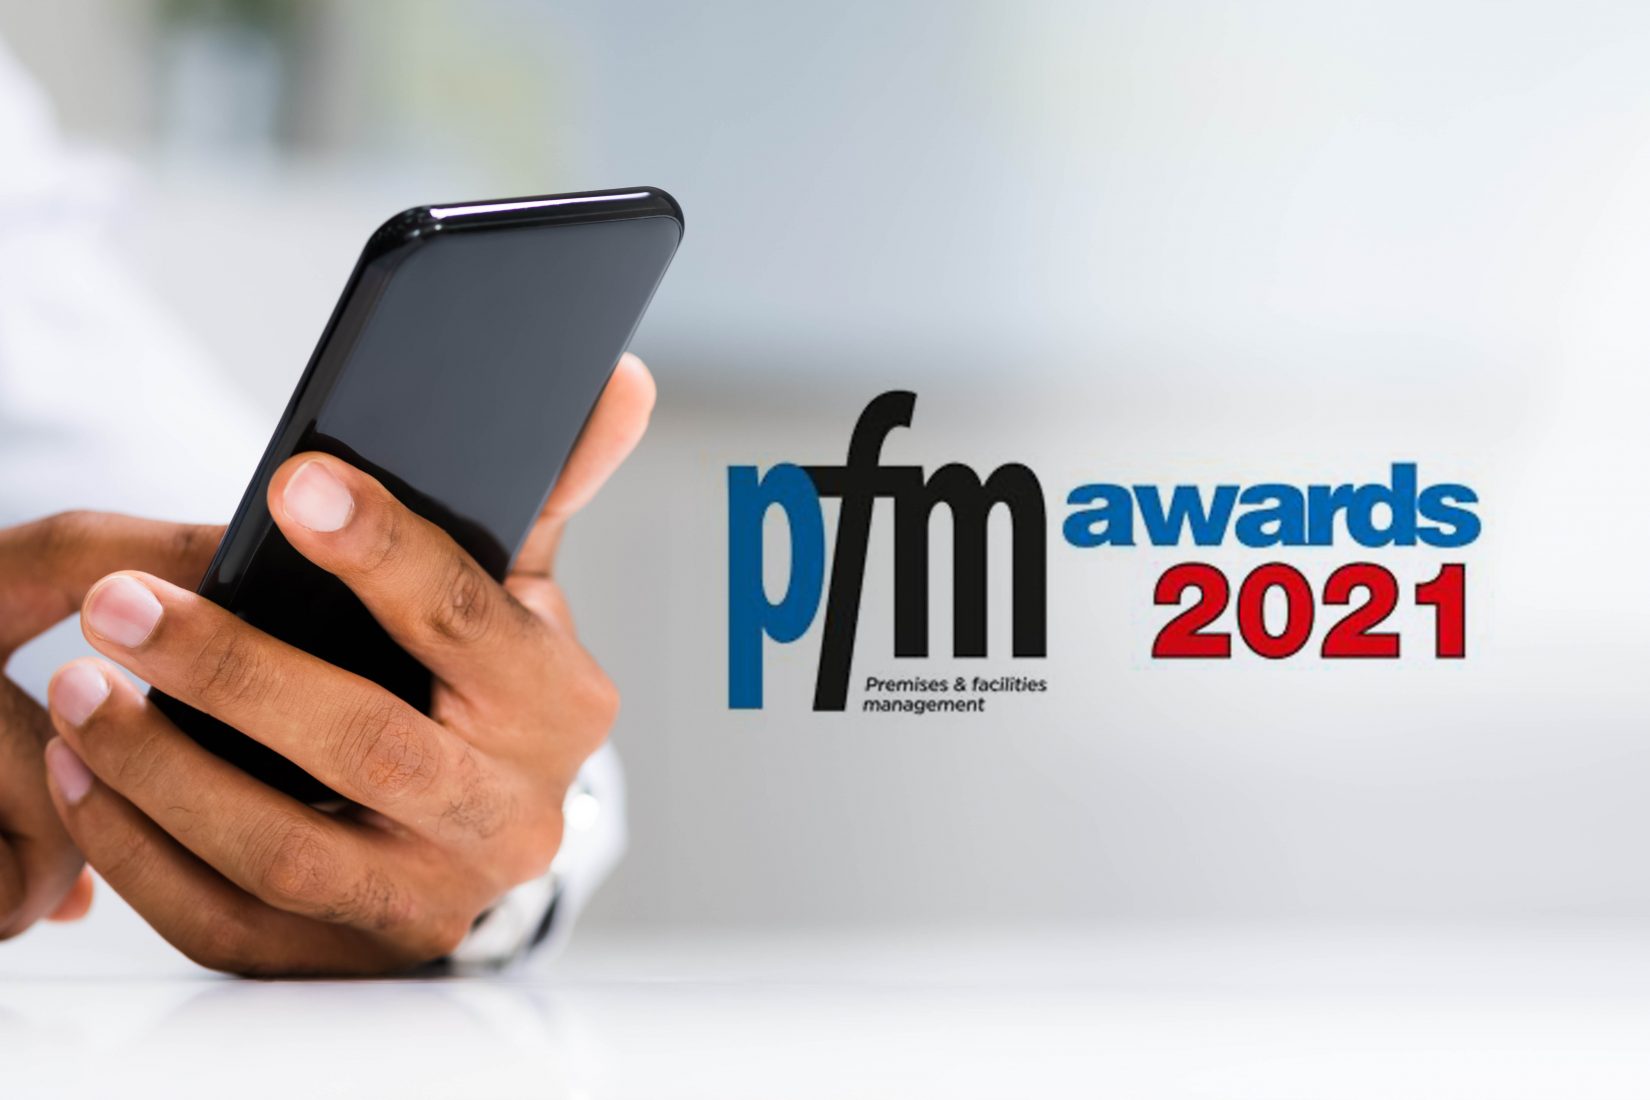 Cureoscity PFM Awards 2021